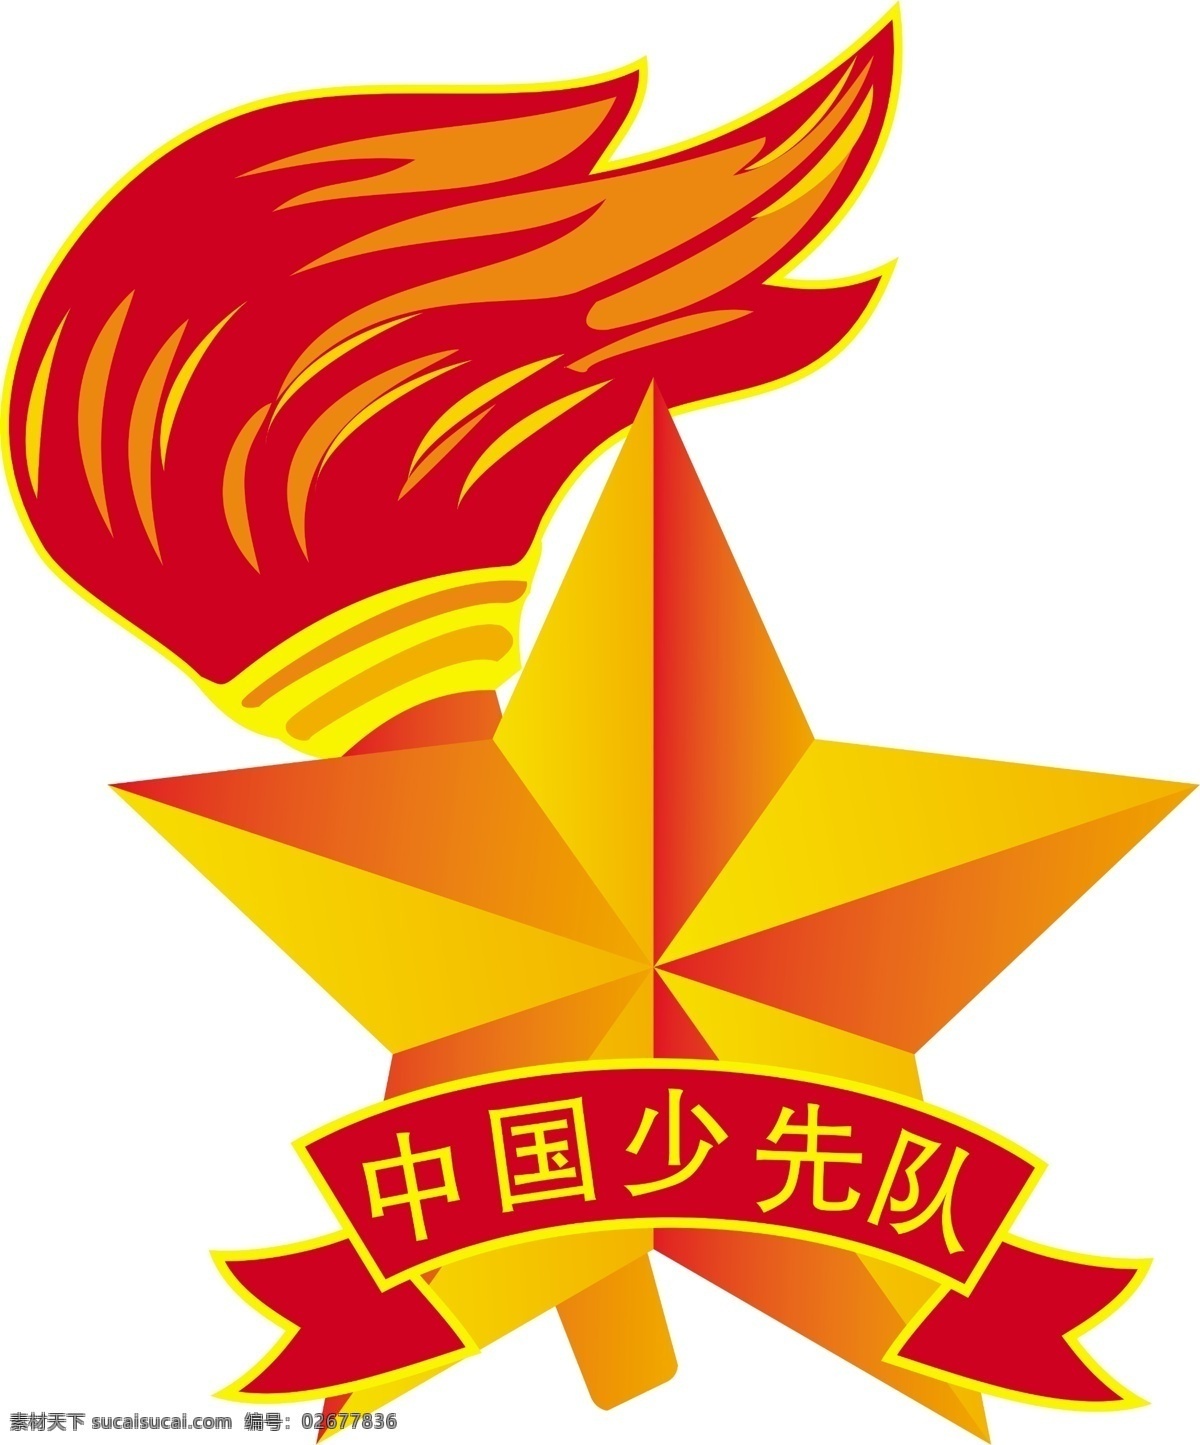 中国 少先队 中国少先队 logo